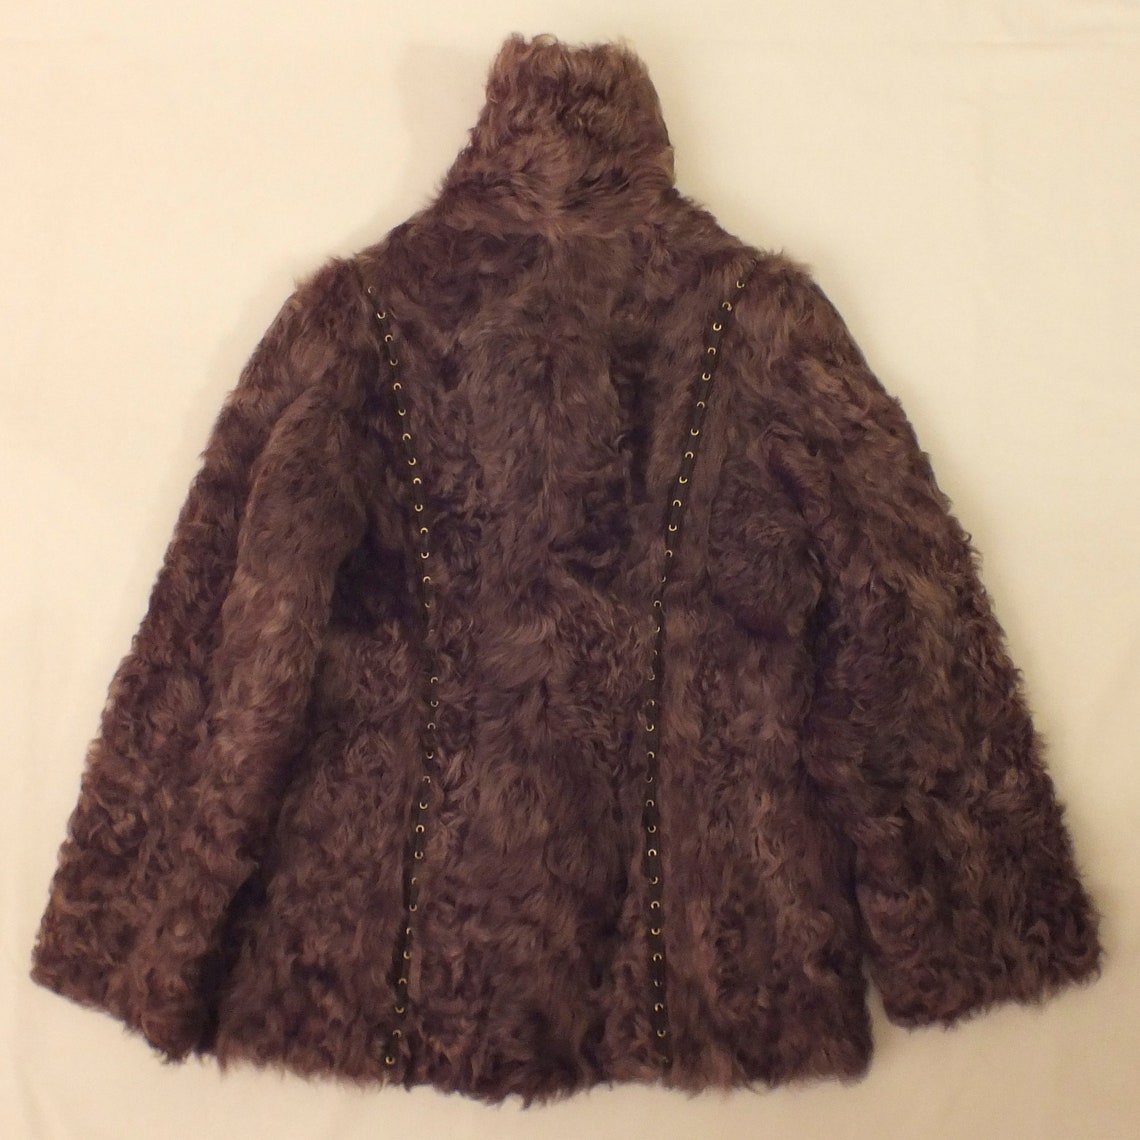 Coat of skin lamb from Tibet./Coat for lady Tibetan fur./Coat | Etsy